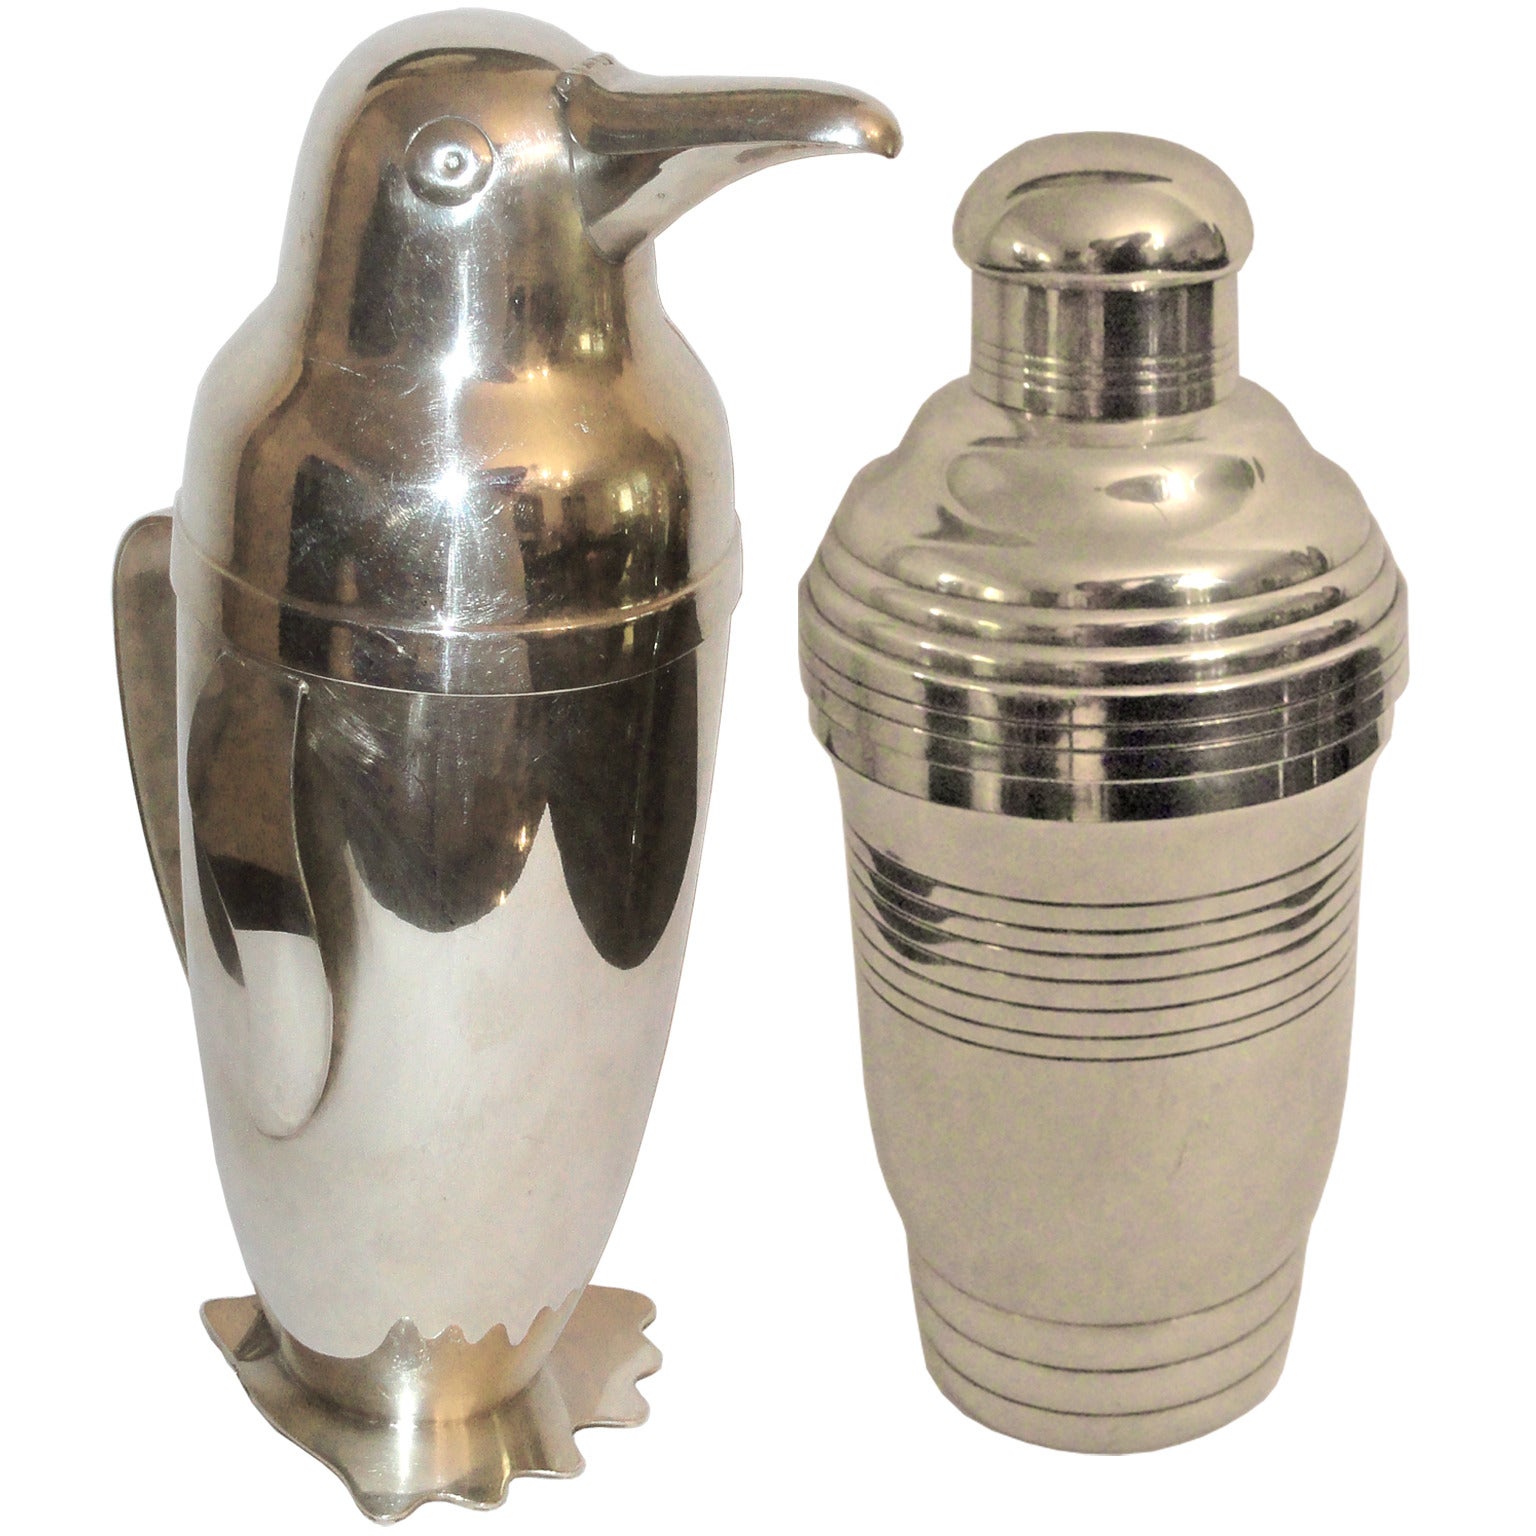 Magnifique shaker "Pingouin" conçu par Emil A. Schuelke et Streamline Shaker